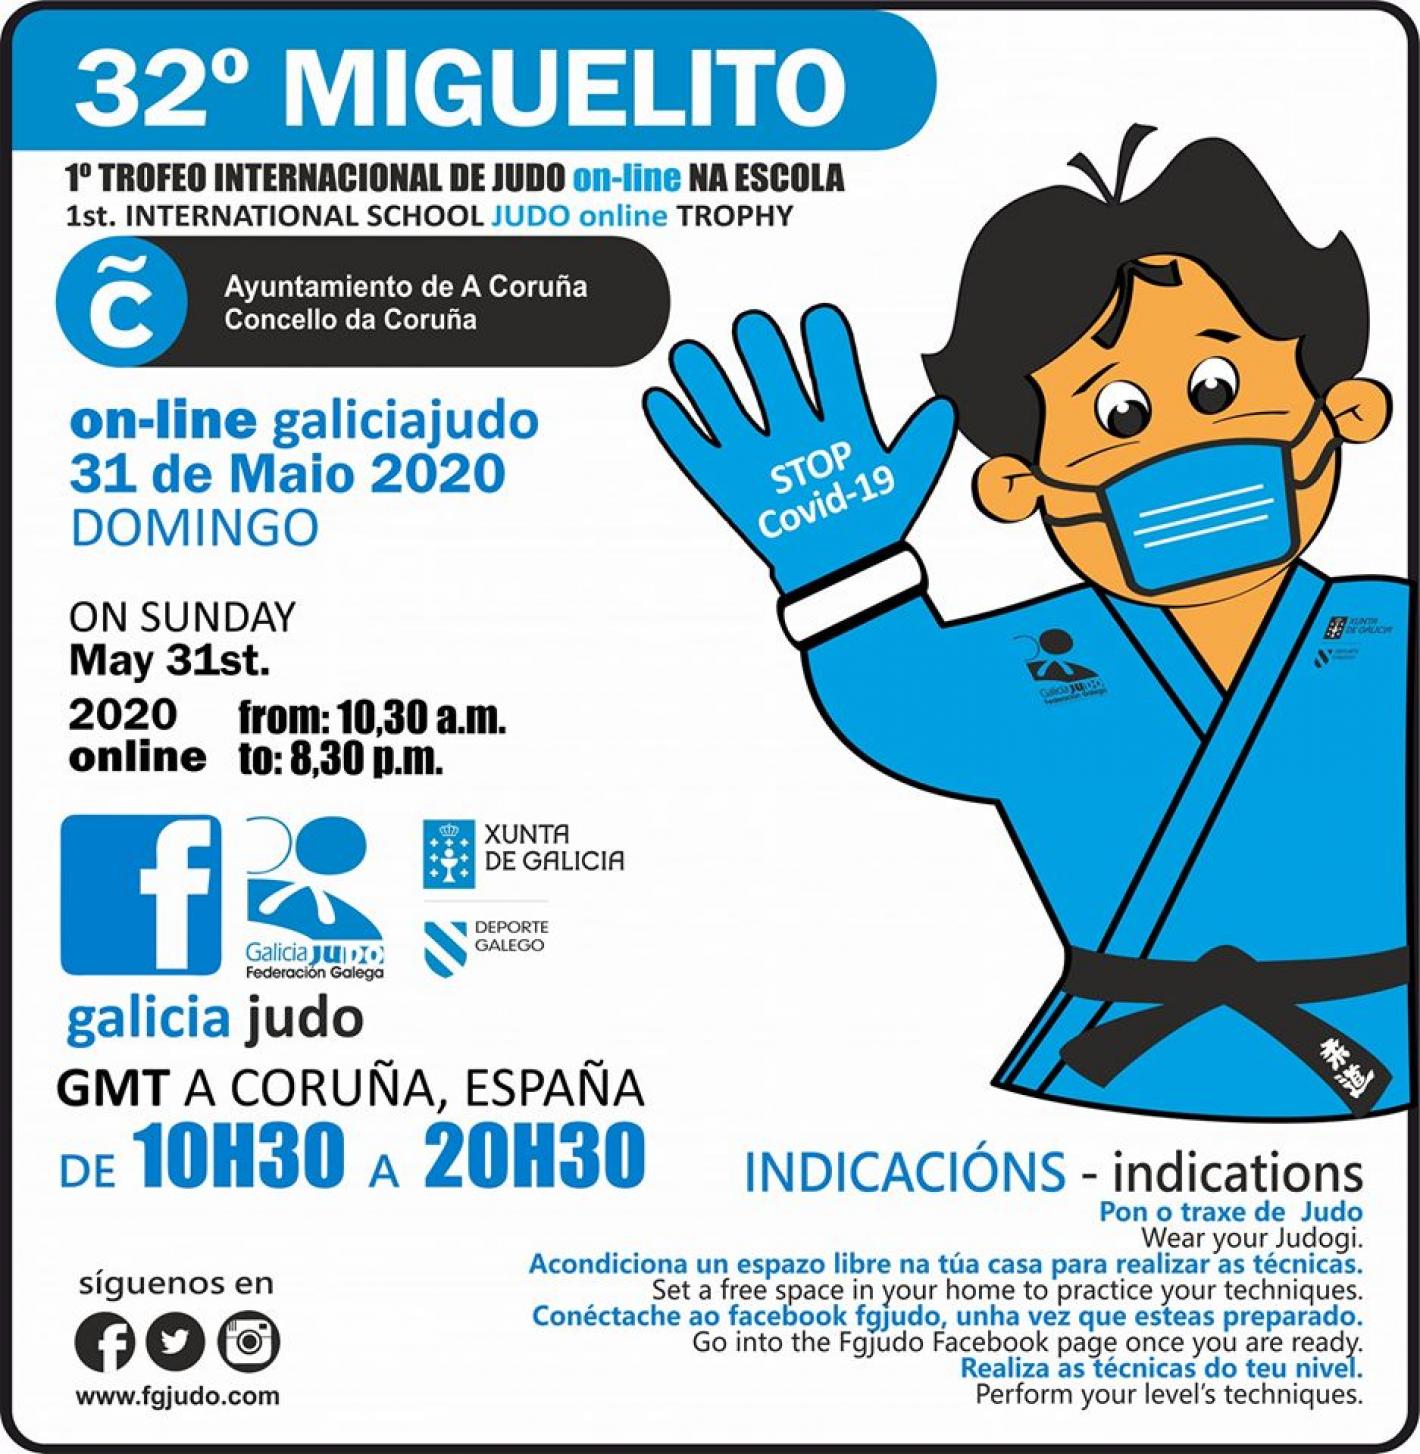 images/friuli_venezia_giulia/2020/small/medium/Miguelito_2.jpg